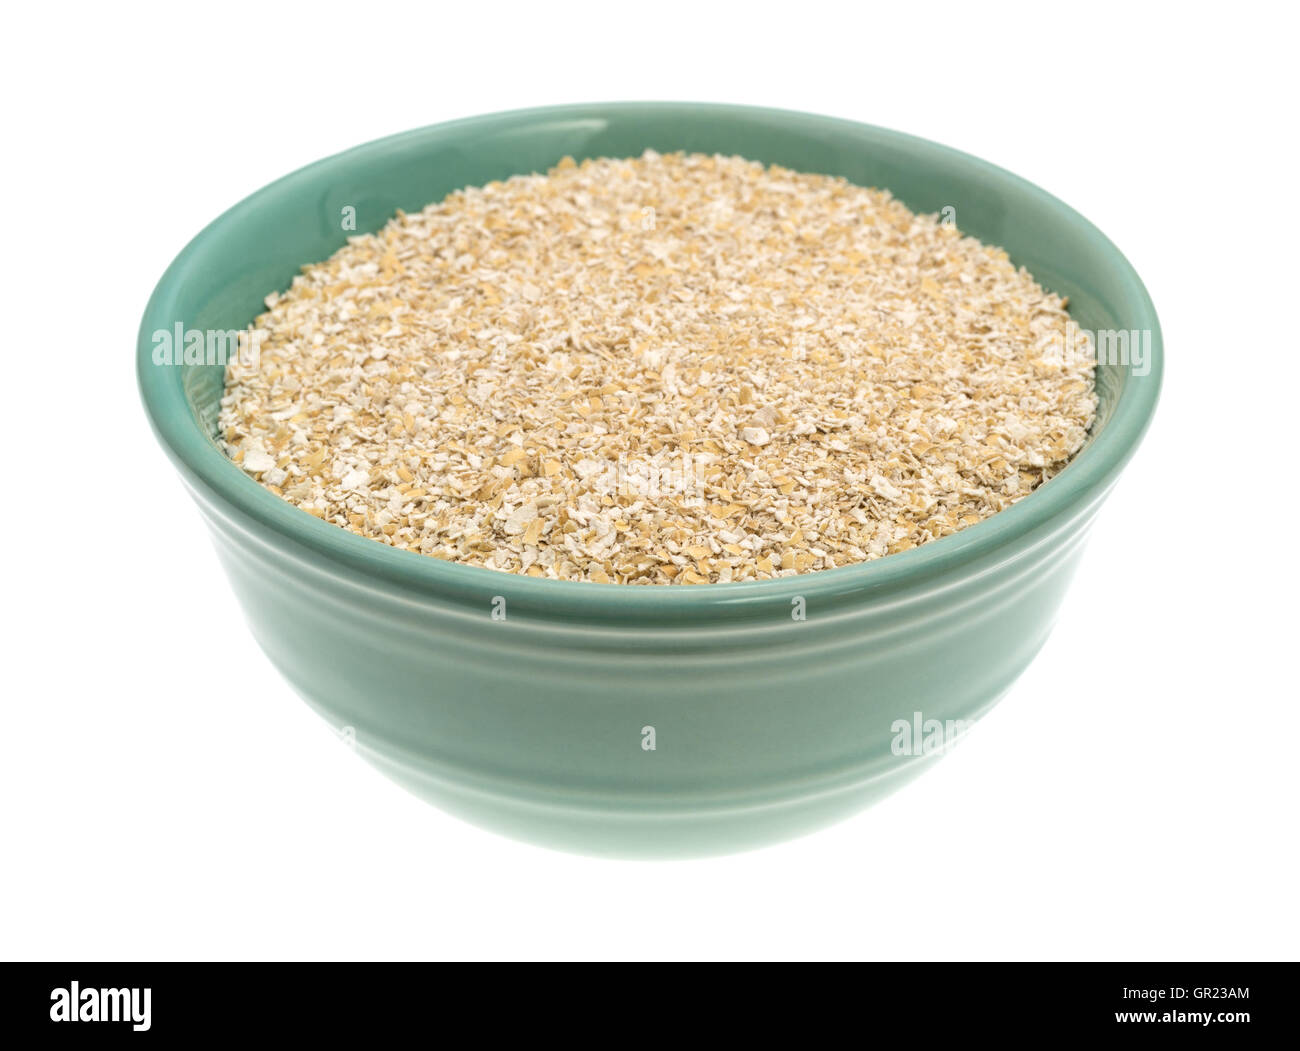 A secco di crusca di avena cereale a caldo in un recipiente verde isolato su uno sfondo bianco. Foto Stock